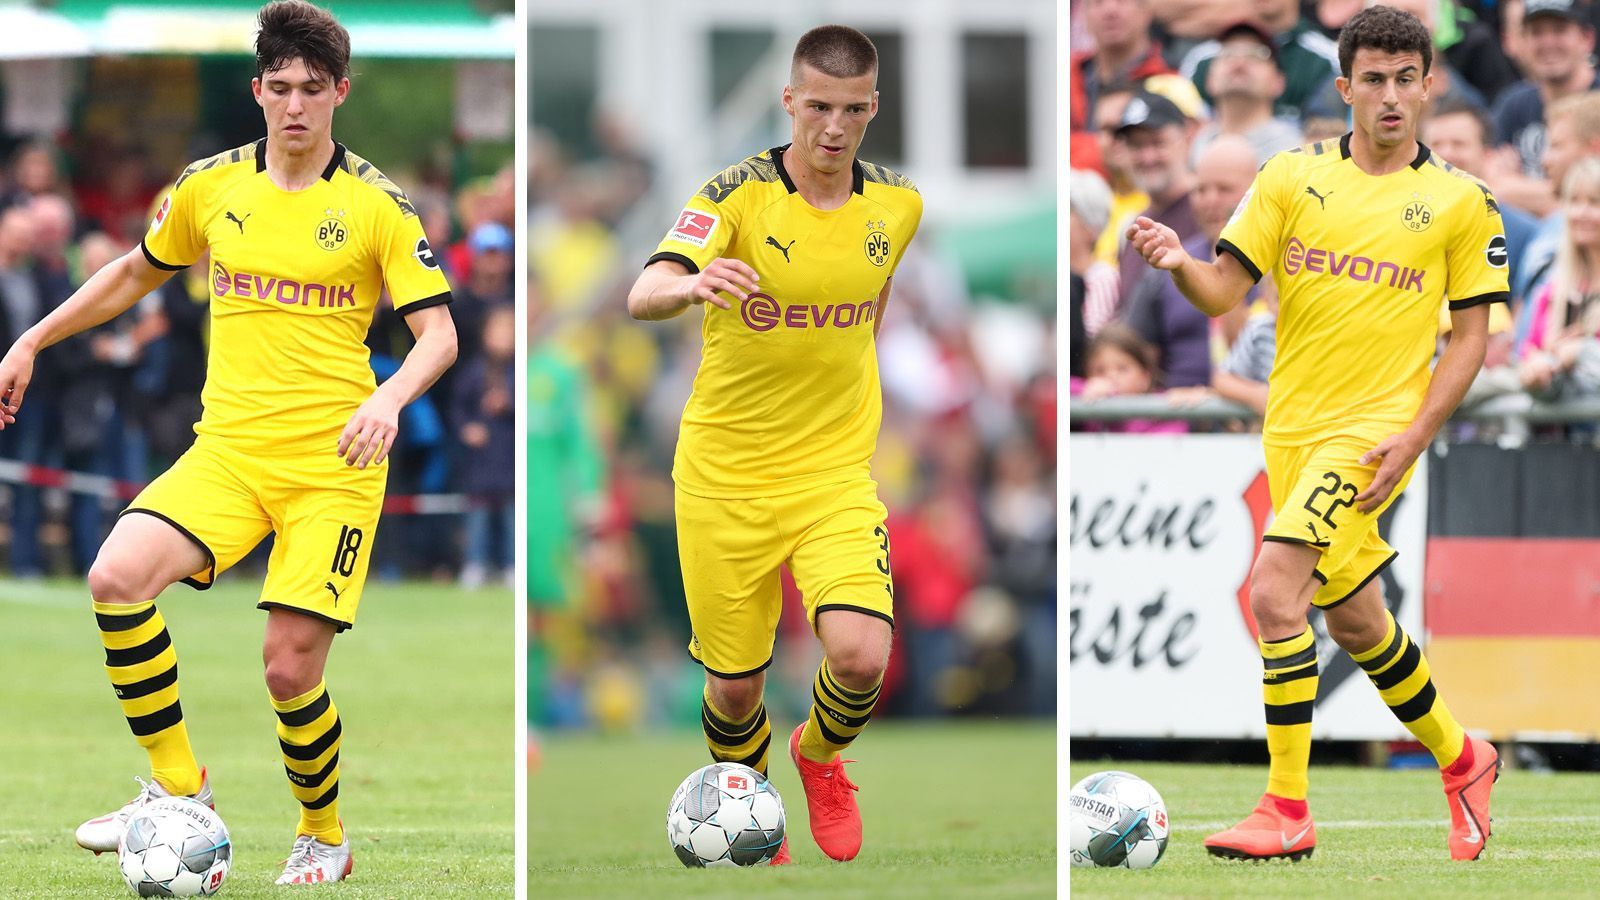 
                <strong>BVB fliegt mit fünf Talenten in die USA</strong><br>
                Borussia Dortmund startet seine USA-Reise mit 26 Spielern, worunter fünf Nachwuchstalente sind. ran.de stellt die Talente vor und präsentiert den restlichen US-Kader des BVB. Dabei gibt es ein paar Überraschungen.
              